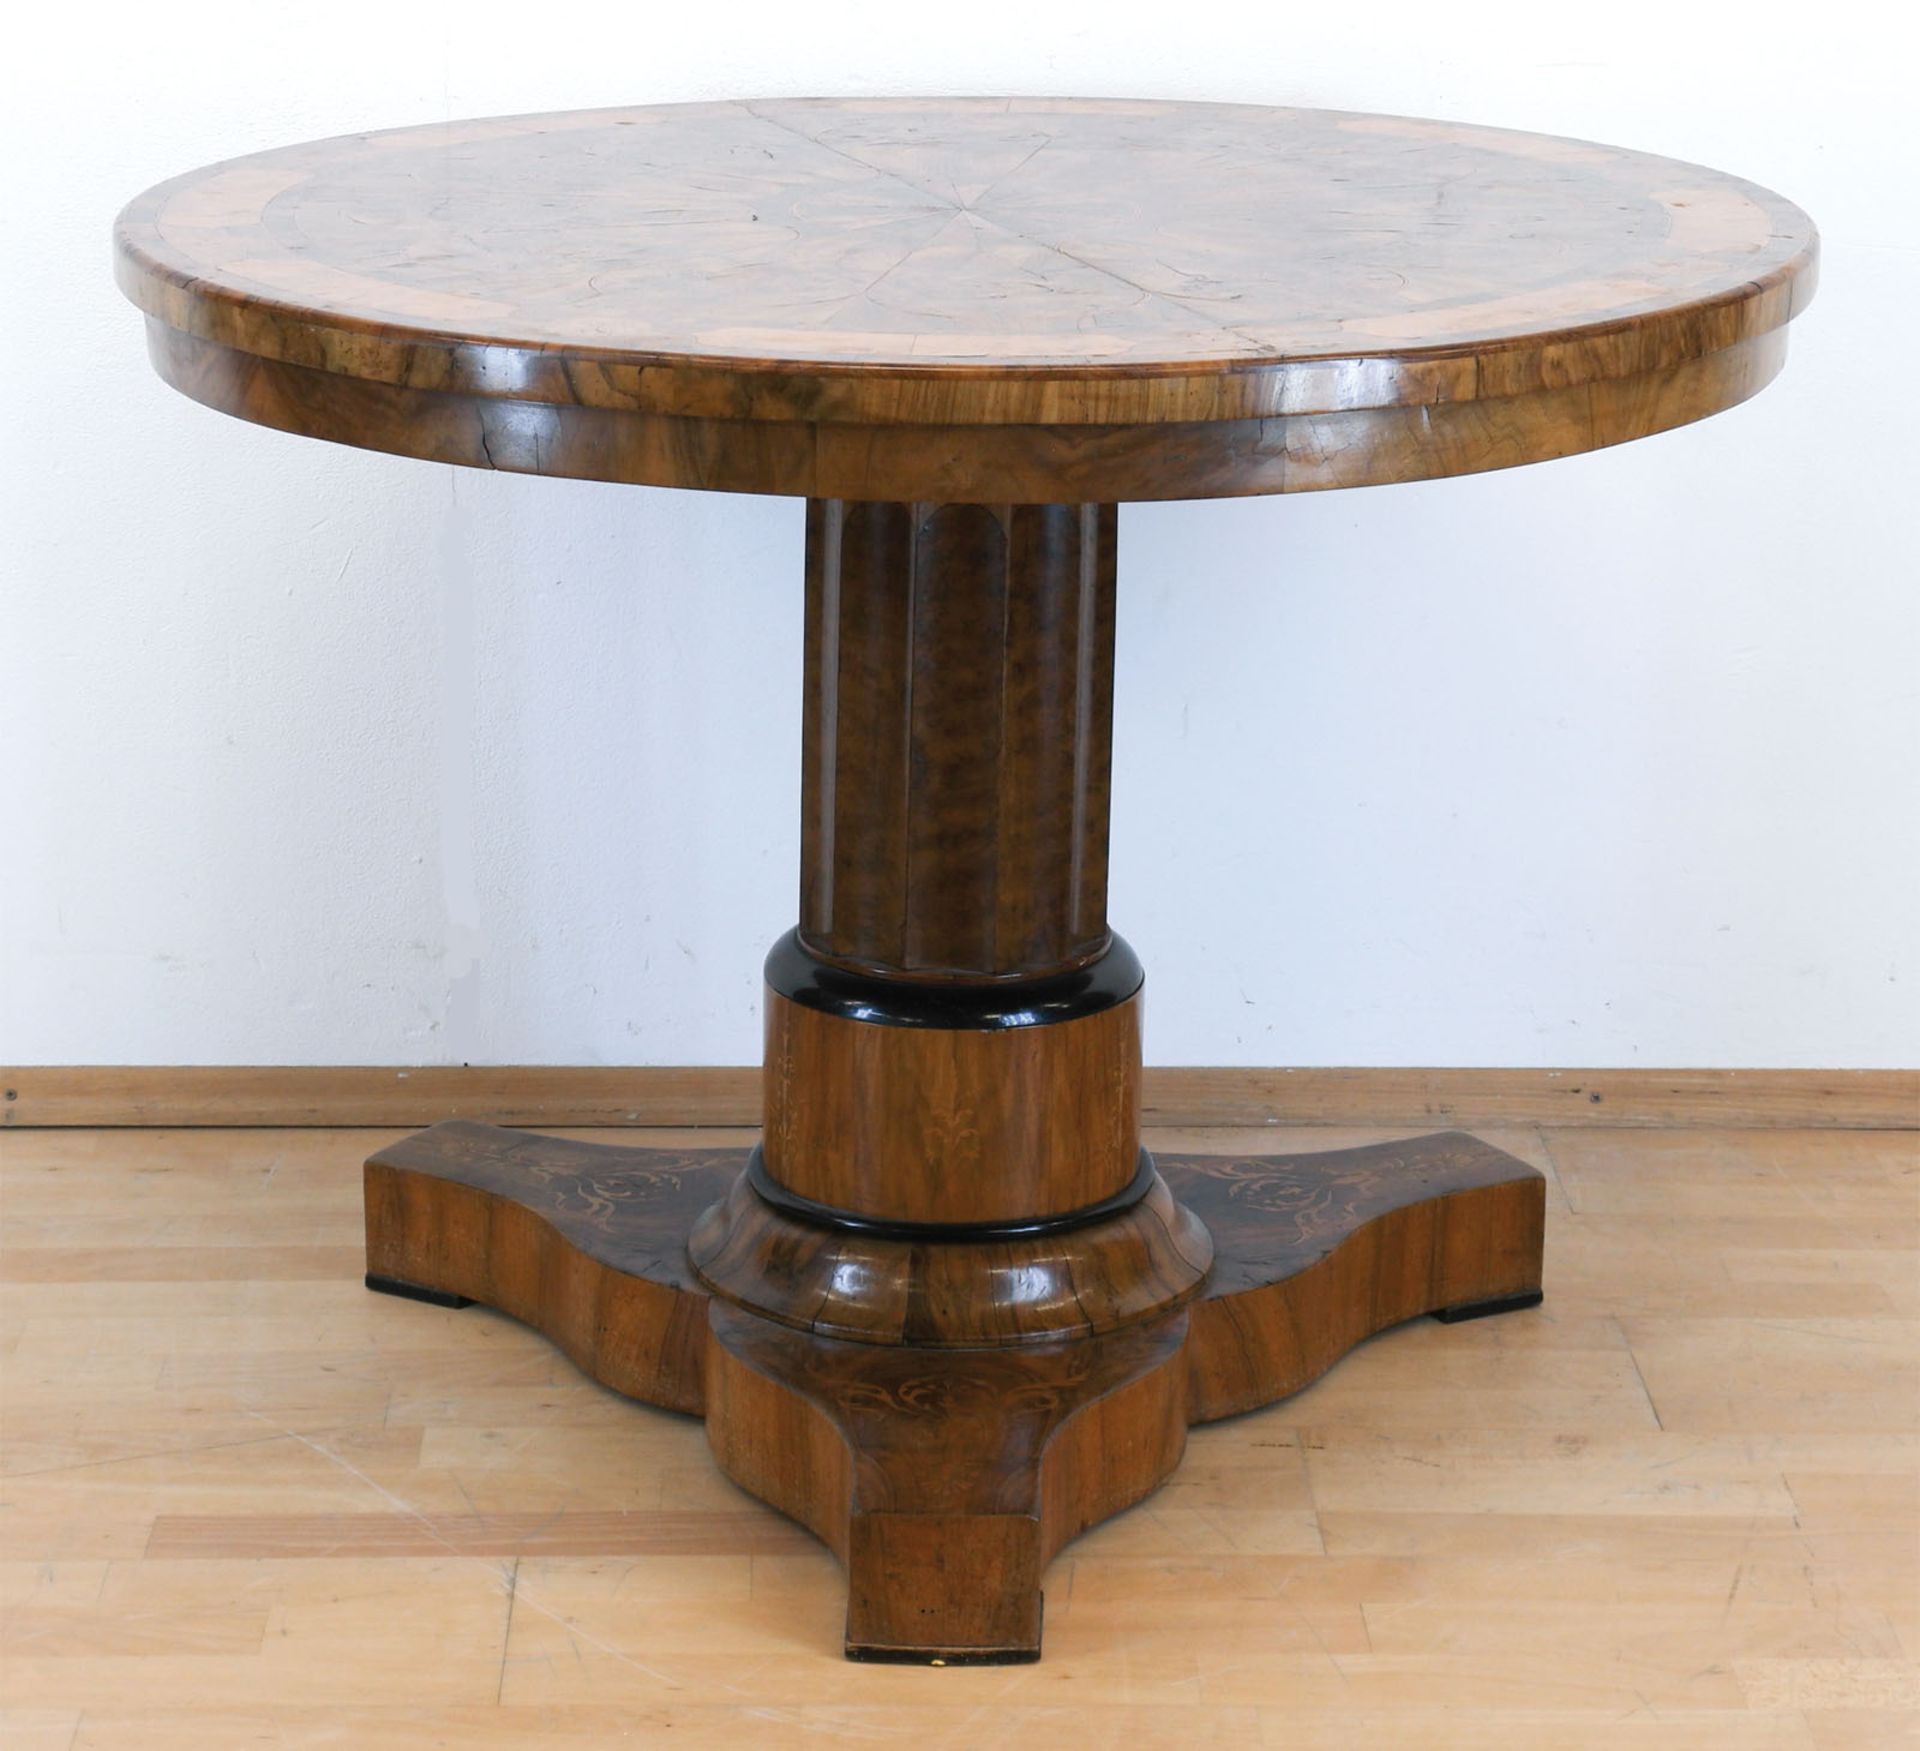 Biedermeier-Tisch, Nußbaum/Maserholz furniert, intarsiert, über 3-passigem Fuß Mittelsäule mit rund